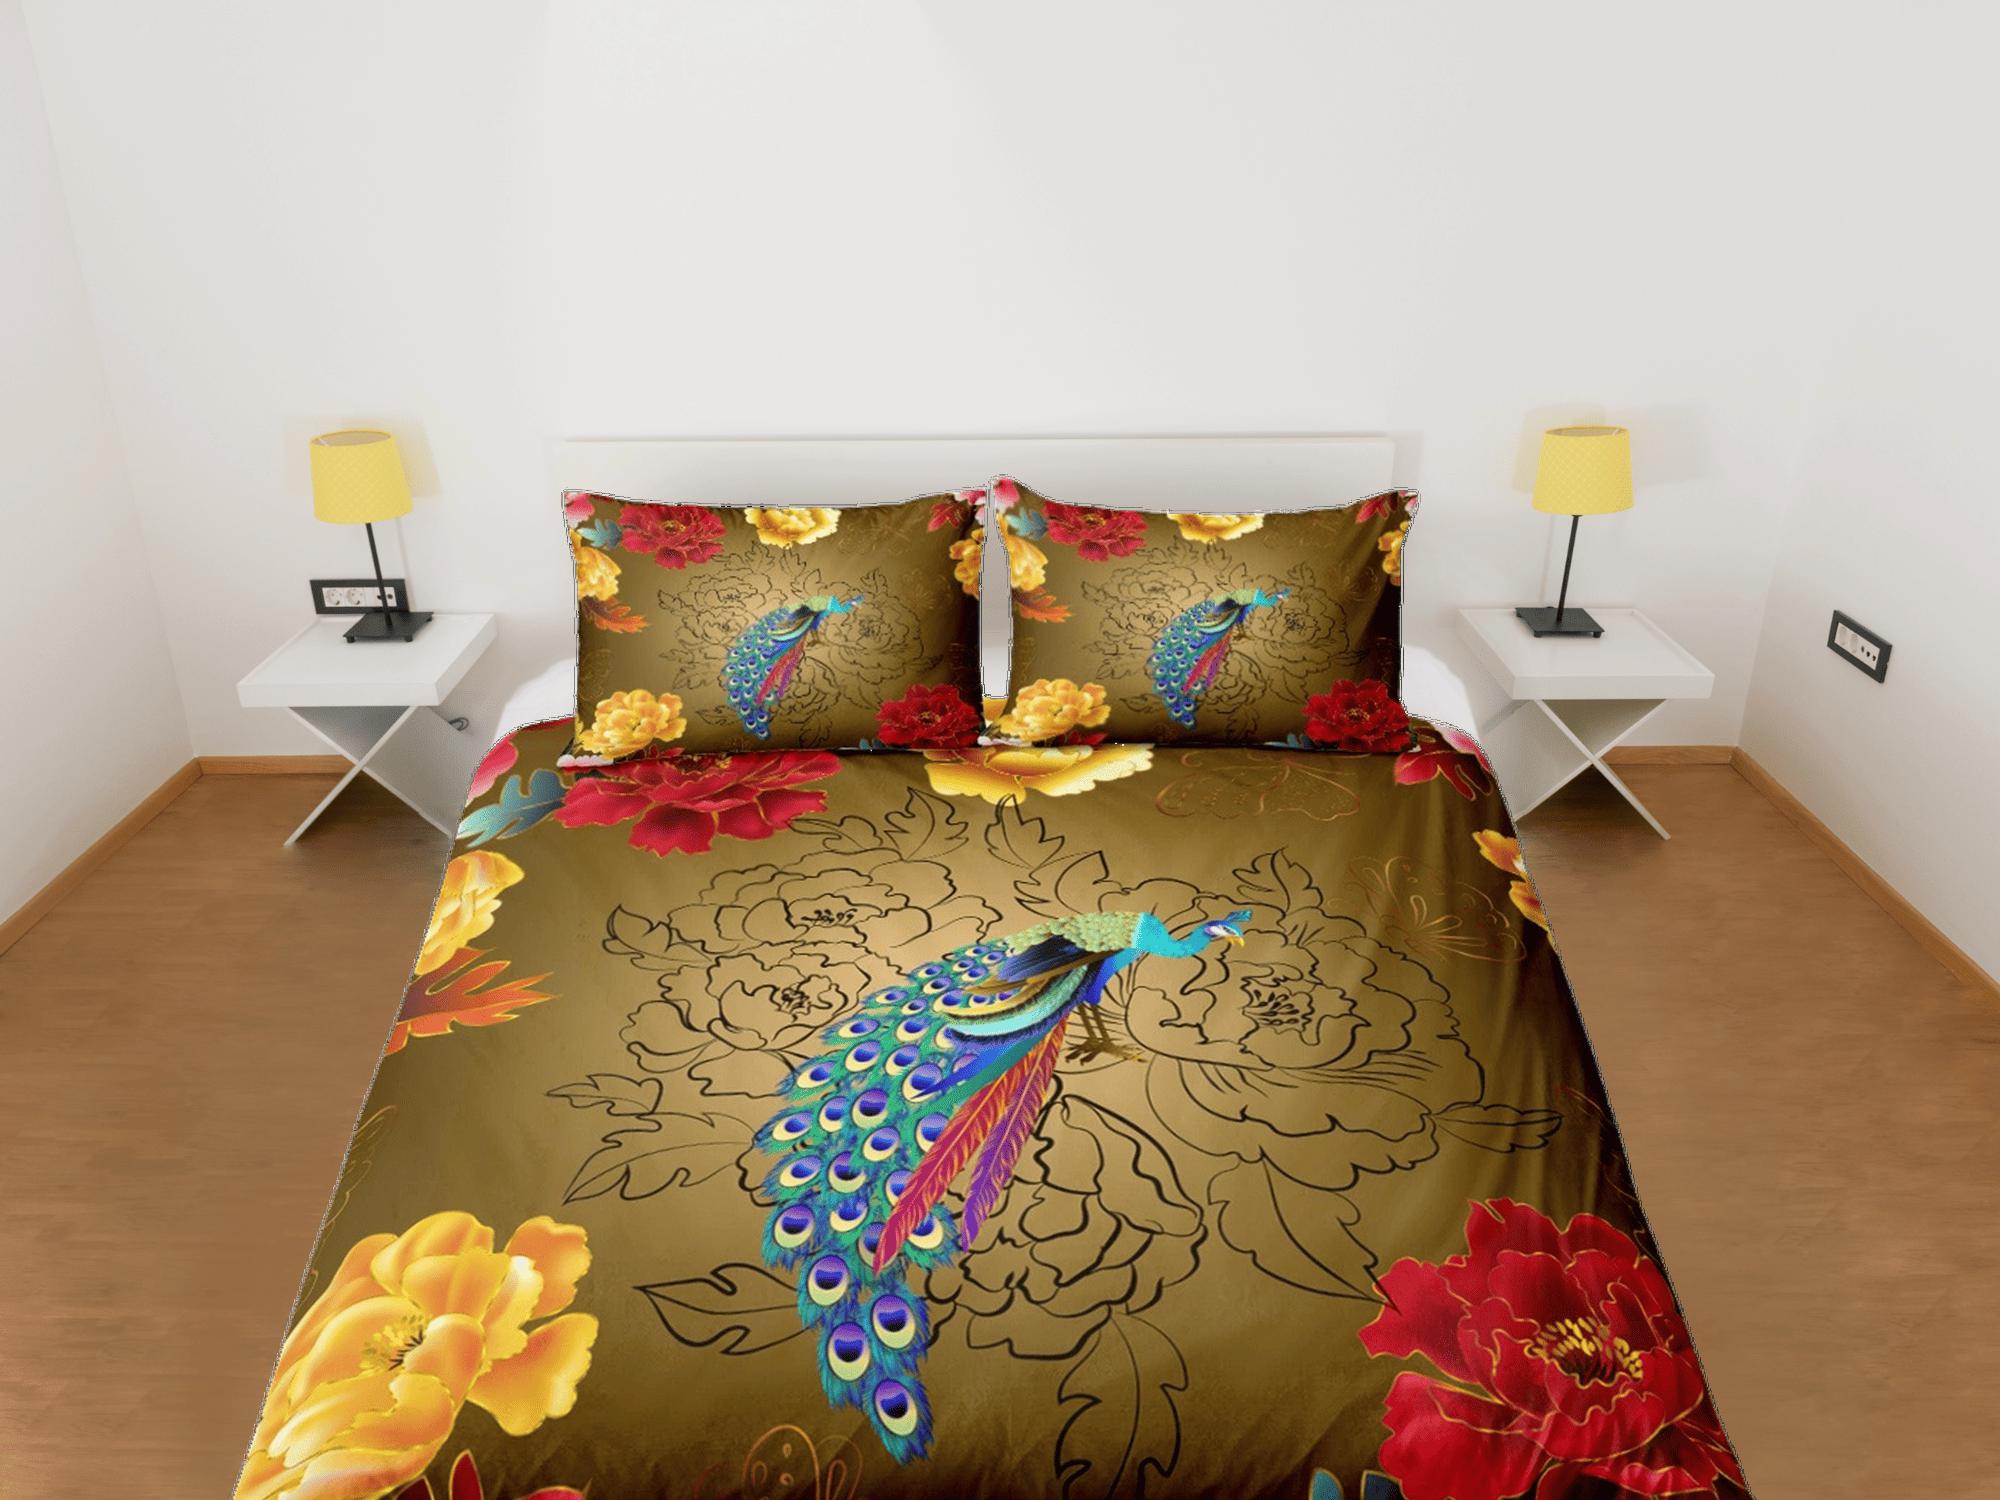 daintyduvet Floral prints and peacock decor aesthetic bedding set full, luxury duvet cover queen, king, boho duvet, designer bedding, maximalist